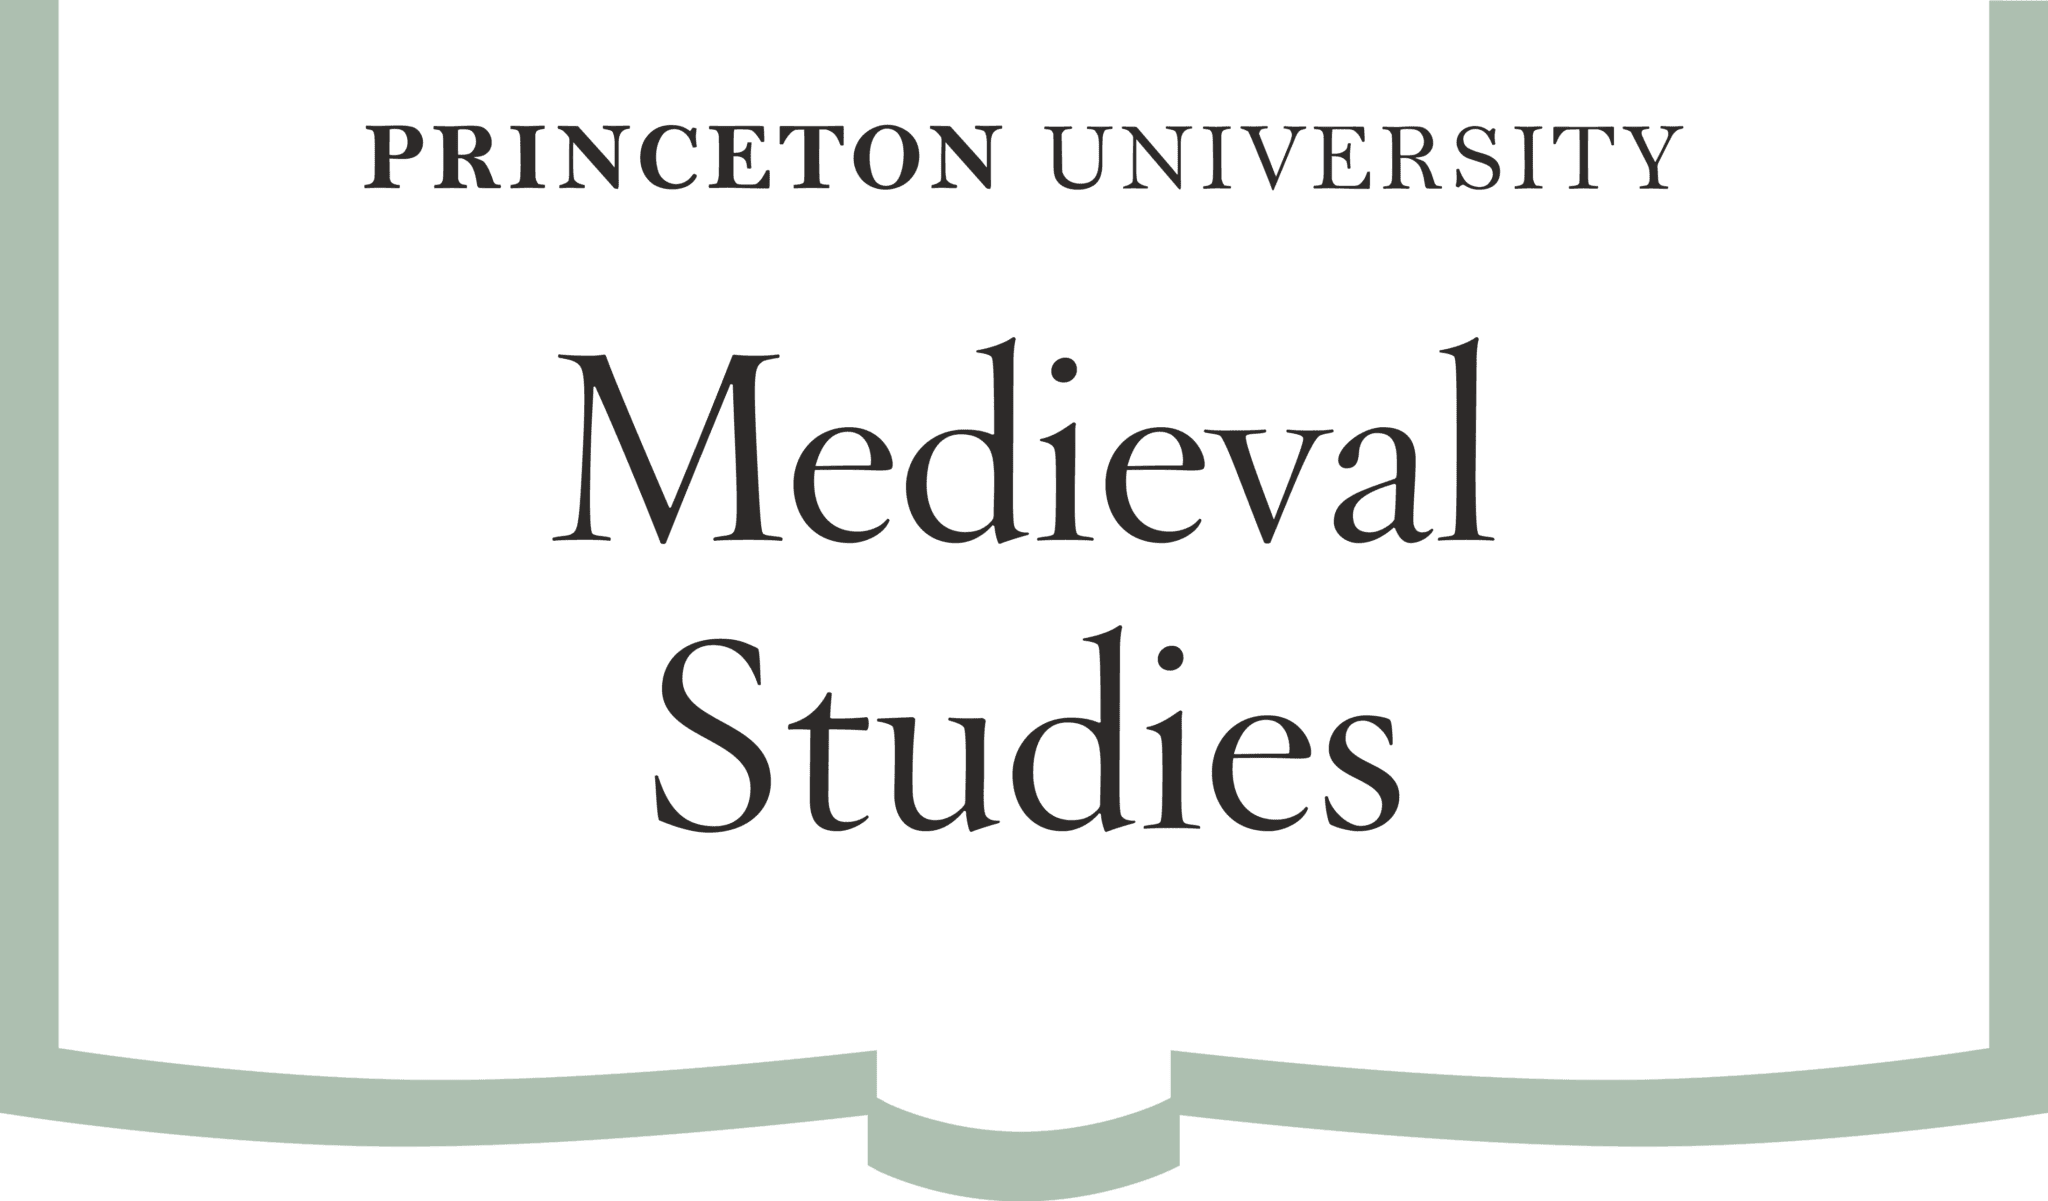 Medieval Studies